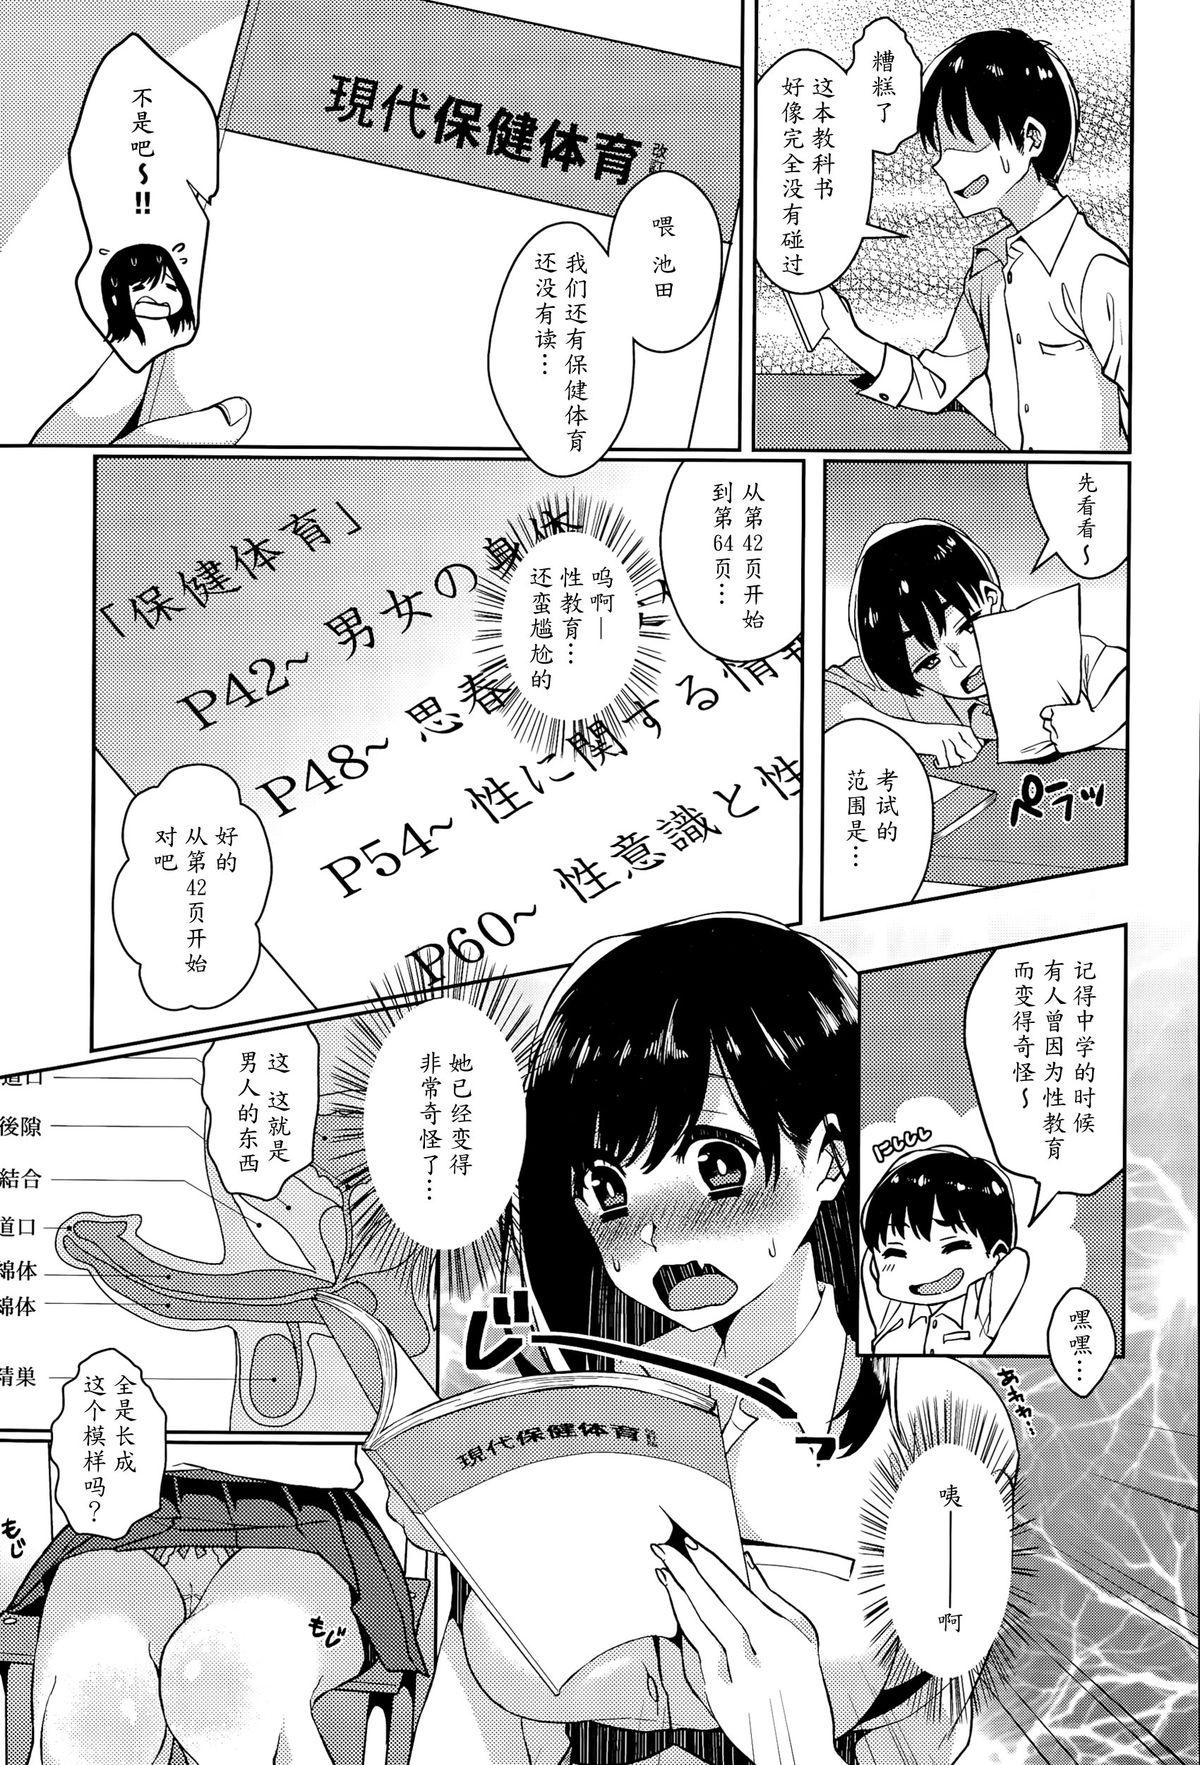 De Quatro Himitsu no Jitsugi Enshuu Teenporn - Page 3